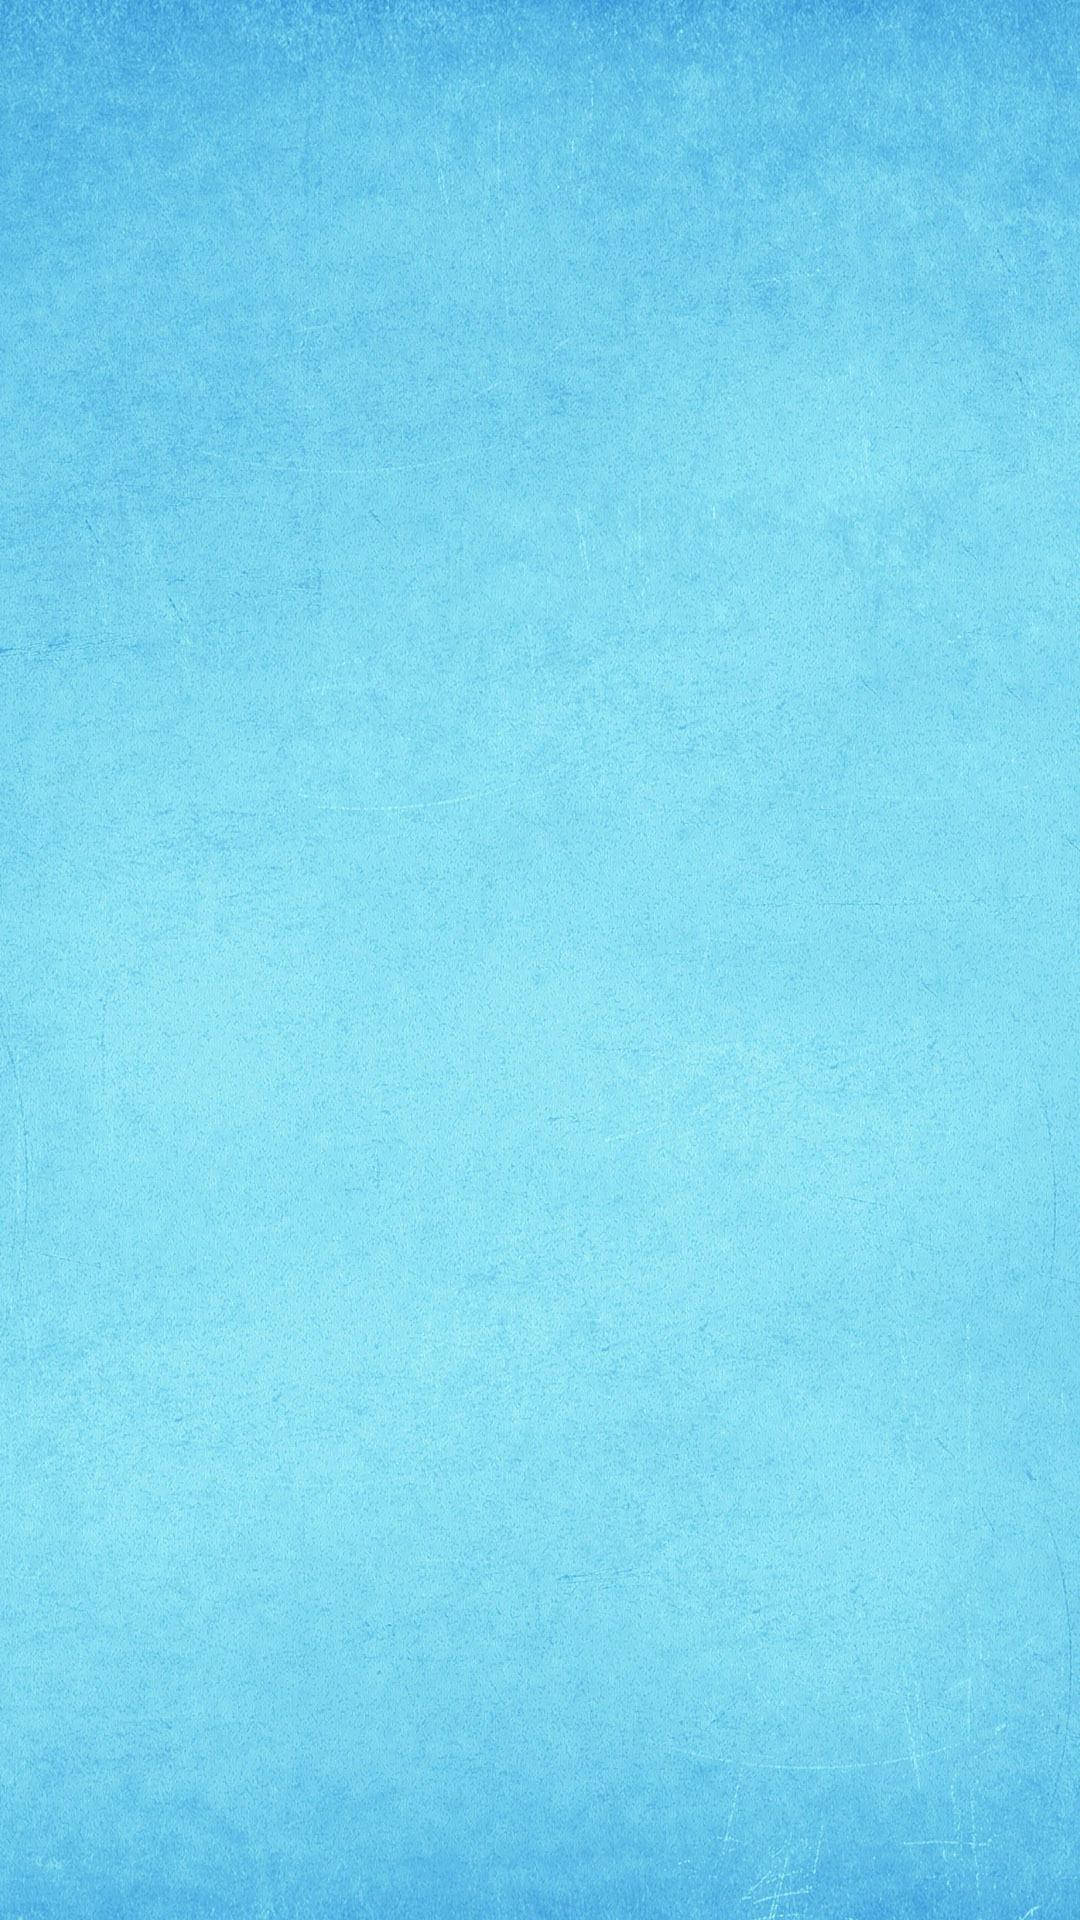 Sleek Modern Light Blue Phone On A Textured Background Wallpaper